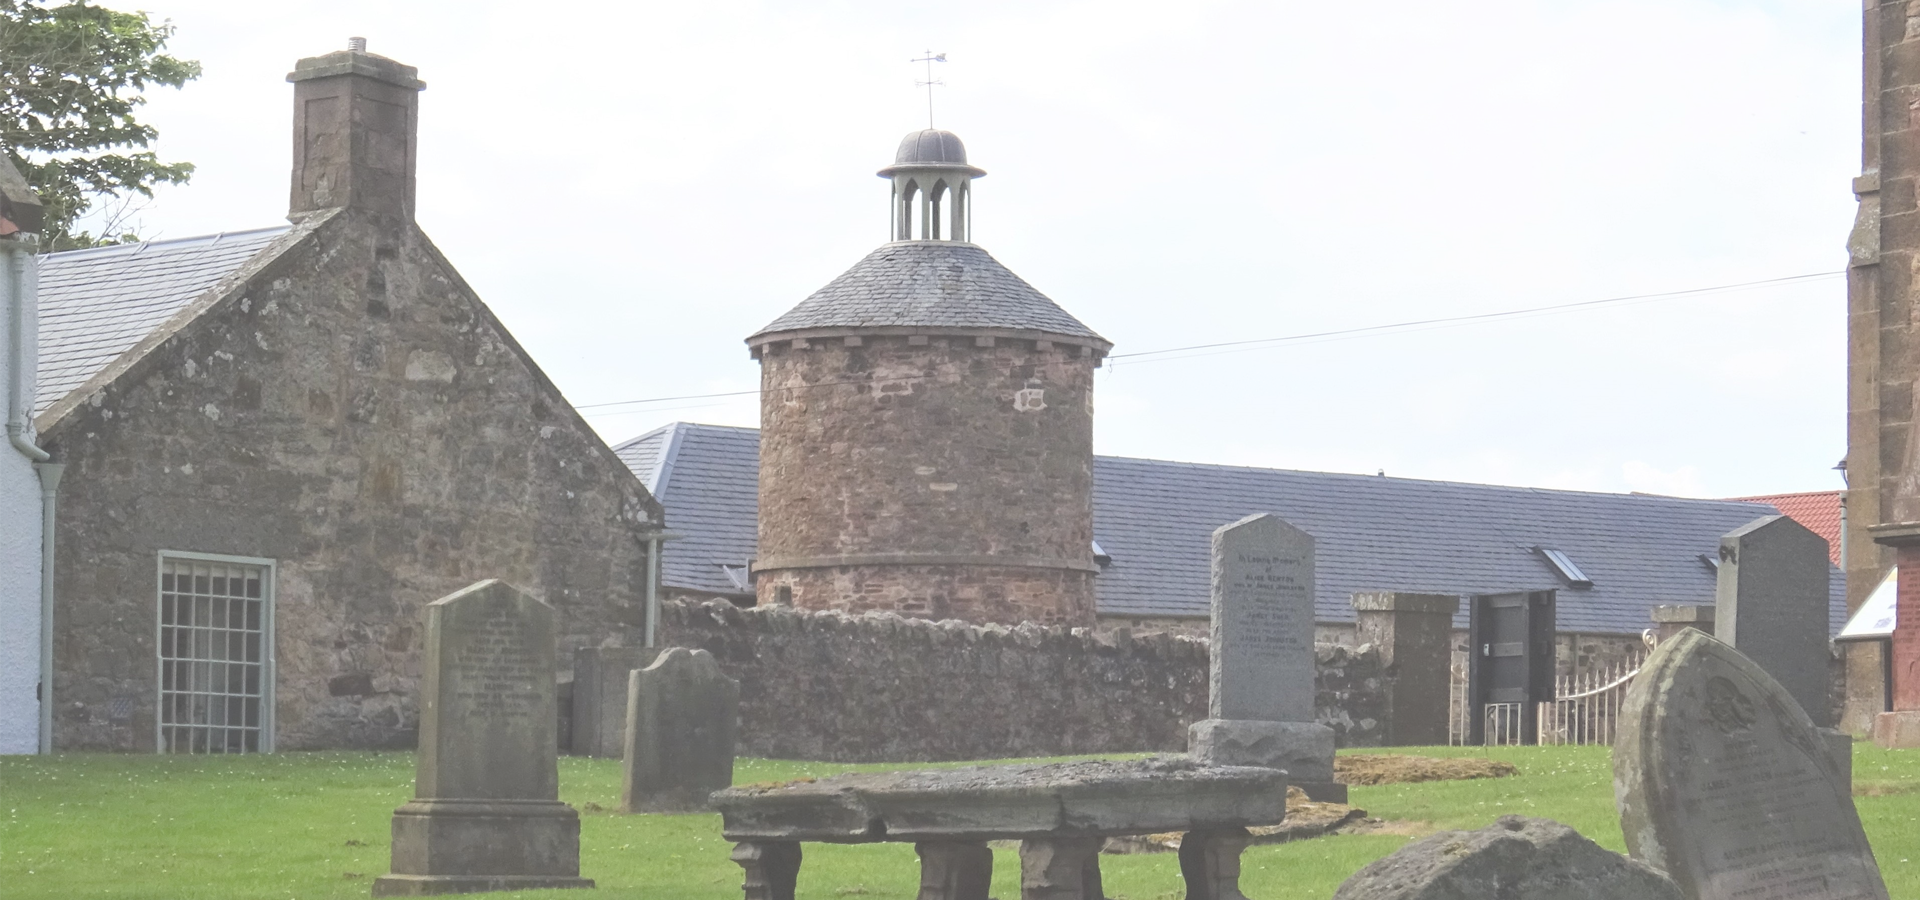 Bolton Churchyard and the doocot, East Lothian